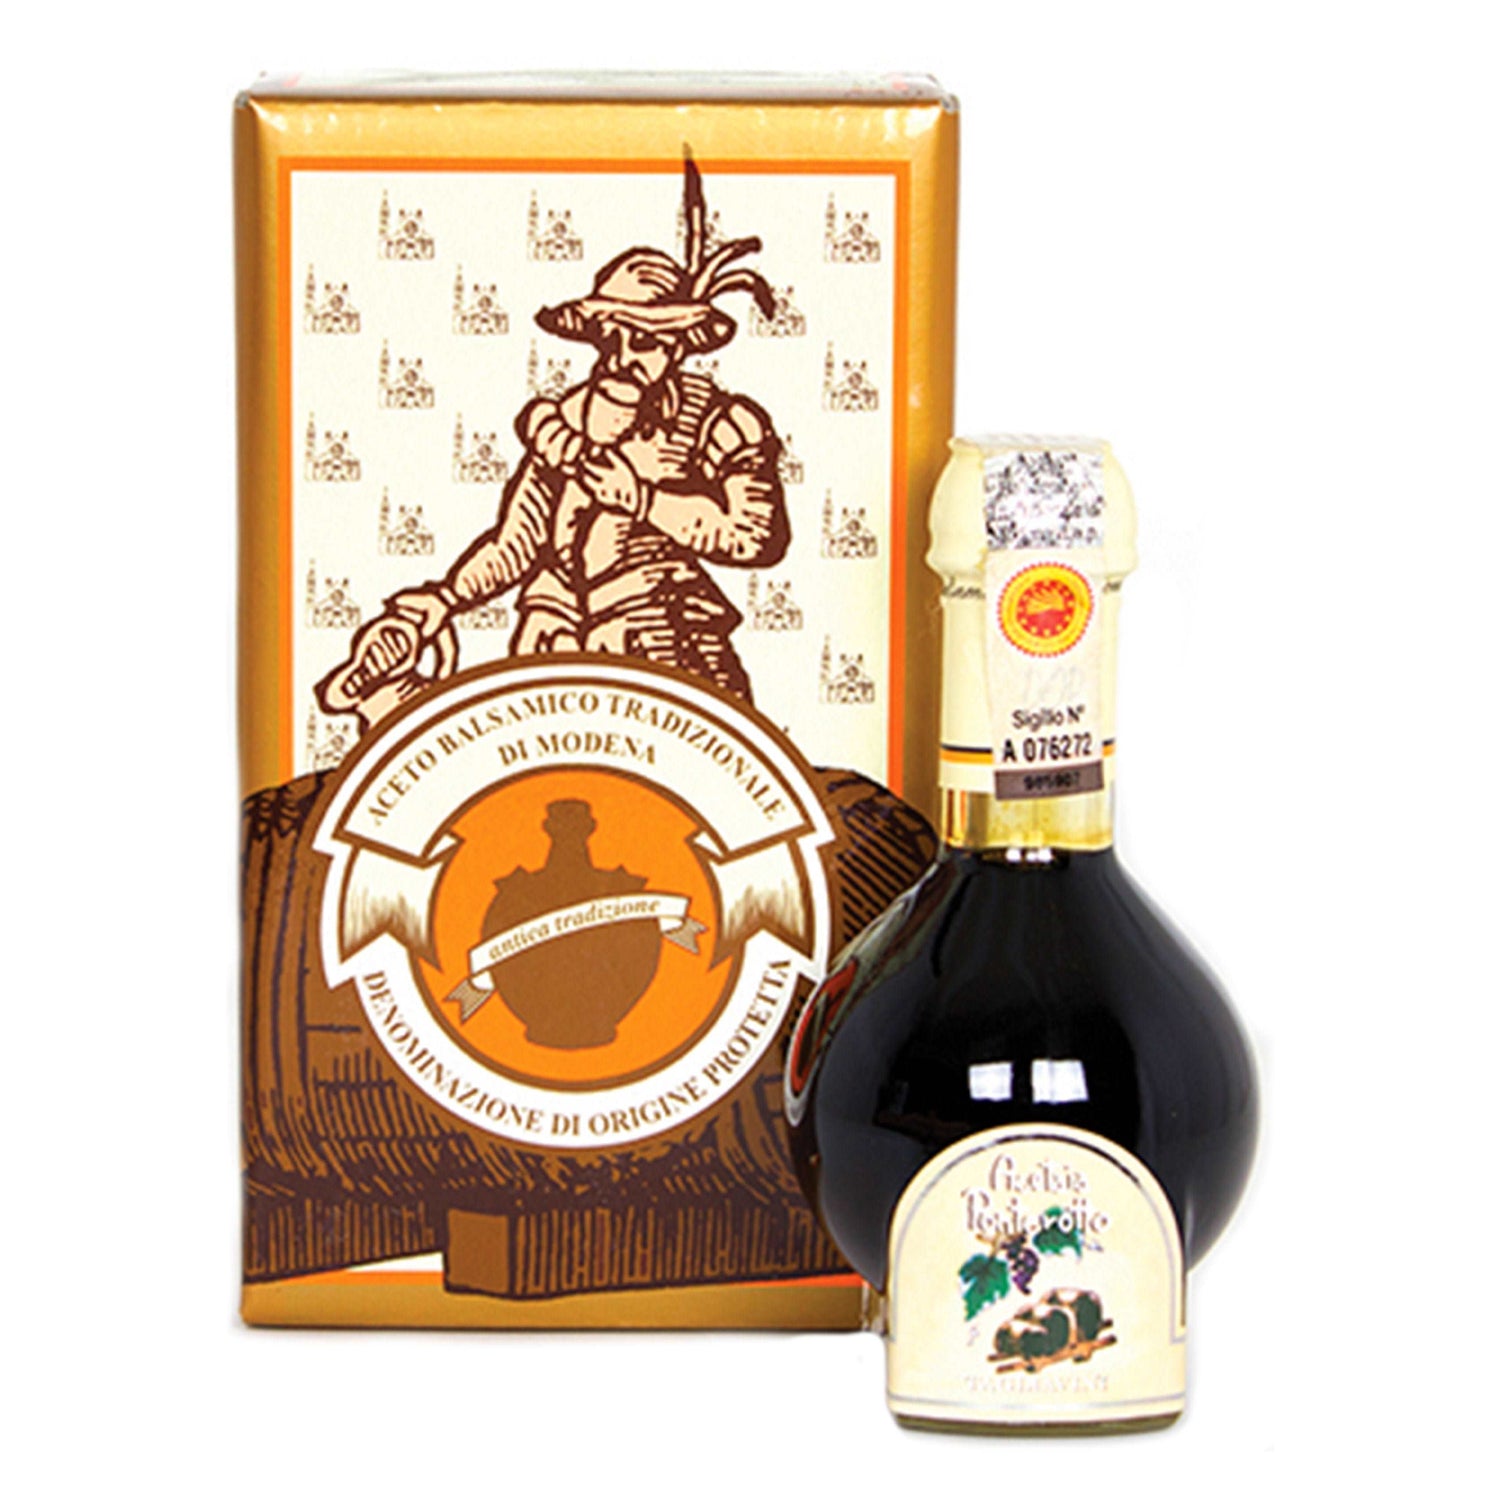 Balsamico Tradizionale di Modena 12-Year Aged Balsamic Vinegar